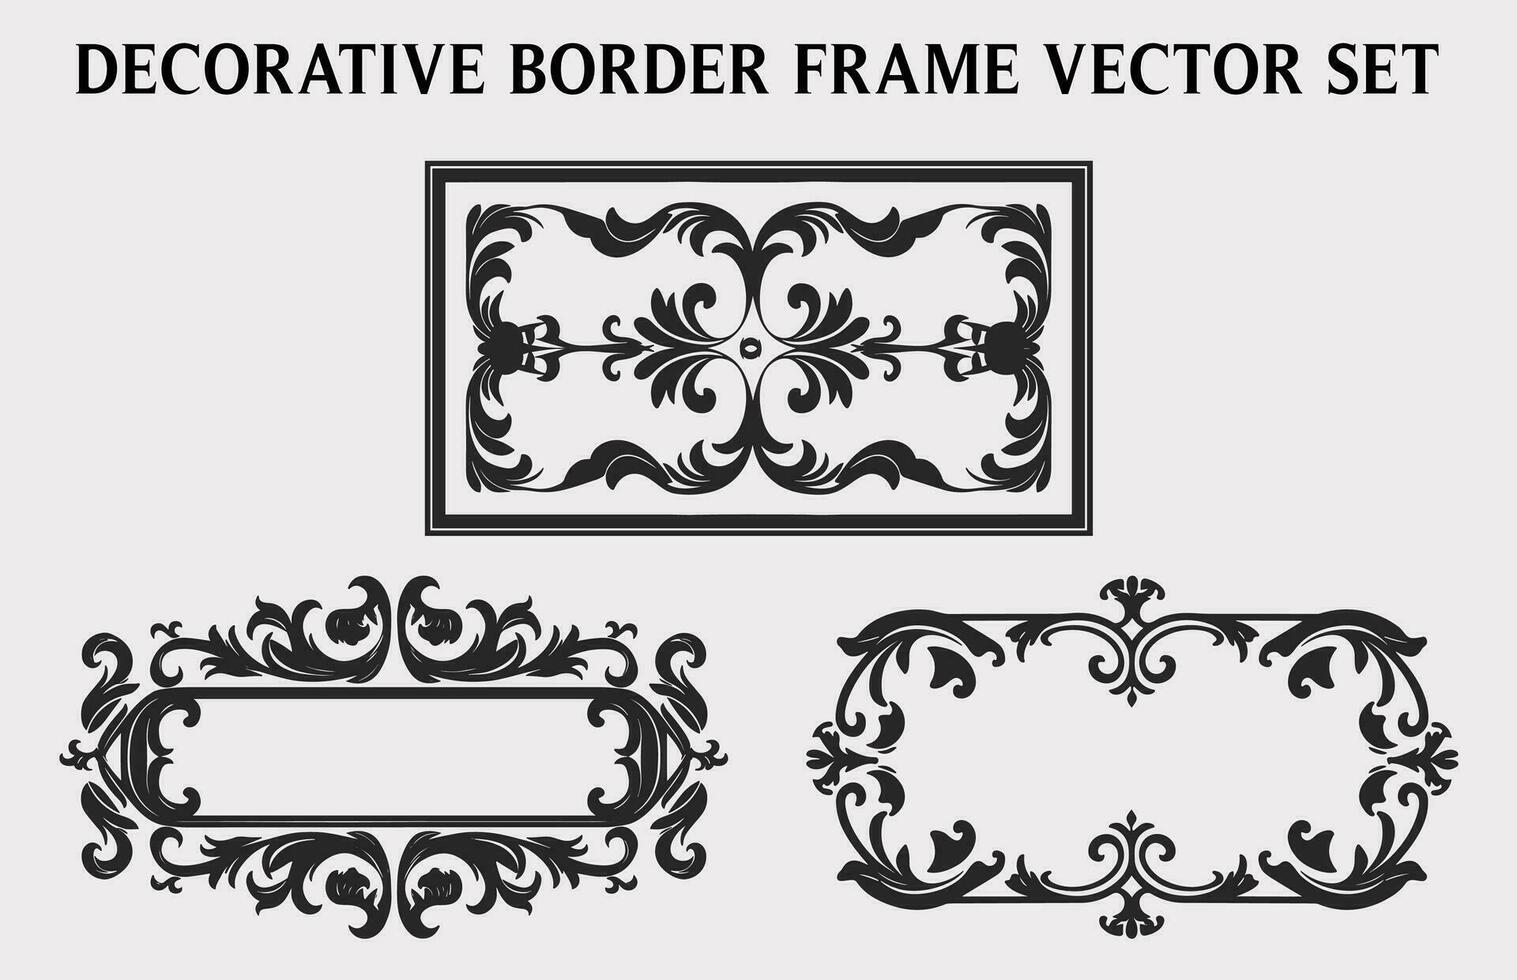 vrij wijnoogst decoratief sier- rechthoek kader vector set, retro vector sier- borders en filigraan bloemen ornamenten